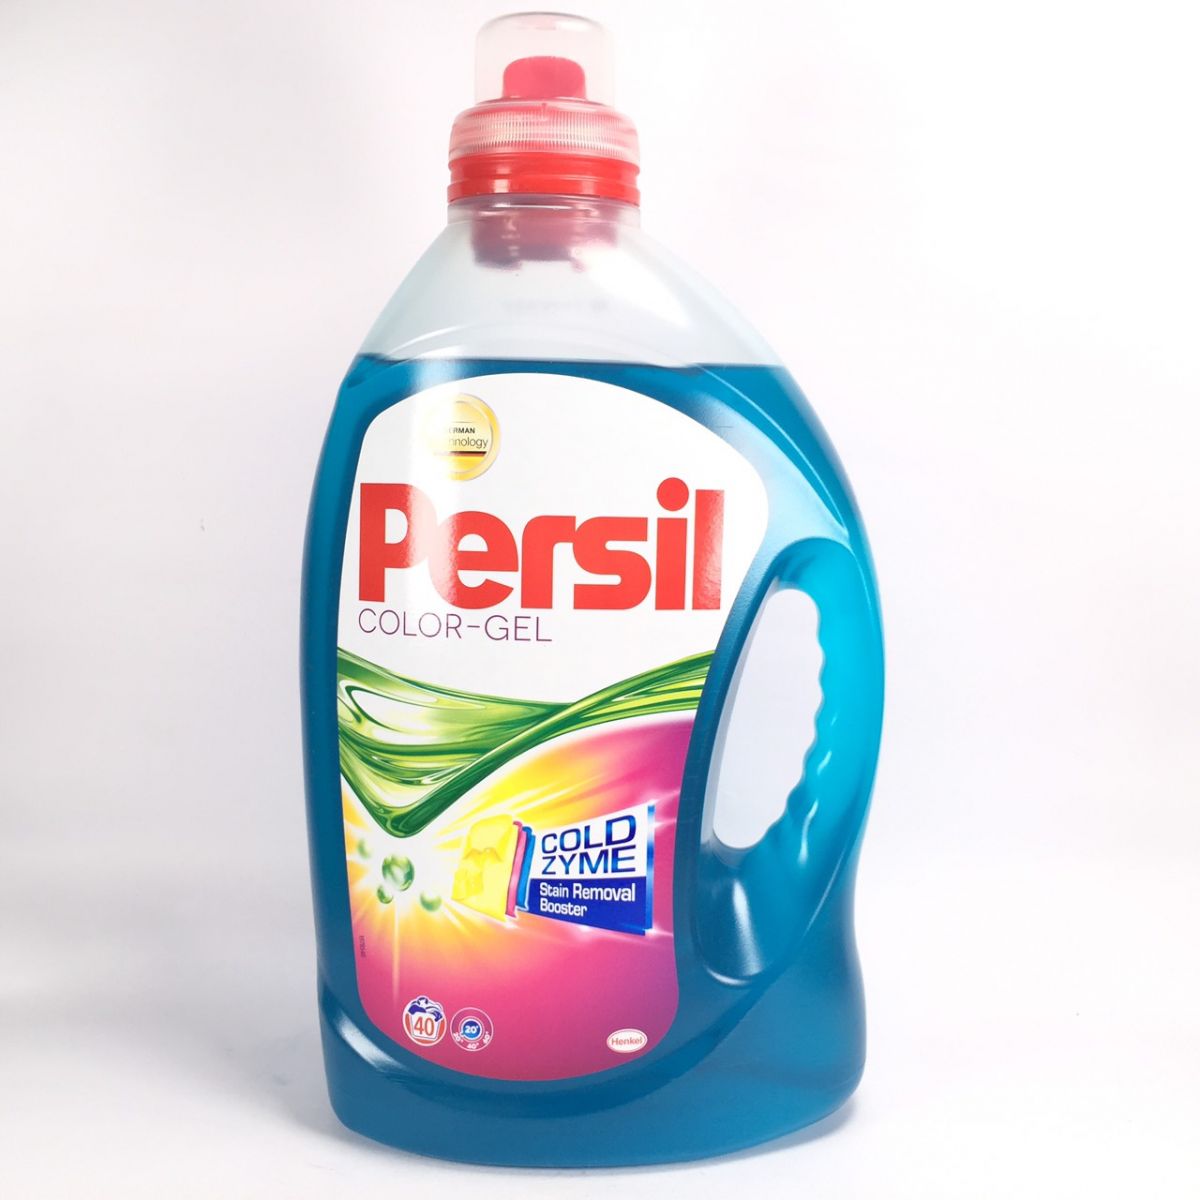 Persil 濃縮高效能洗衣精-鮮豔色彩配方 [2.92公升 40杯 藍色]